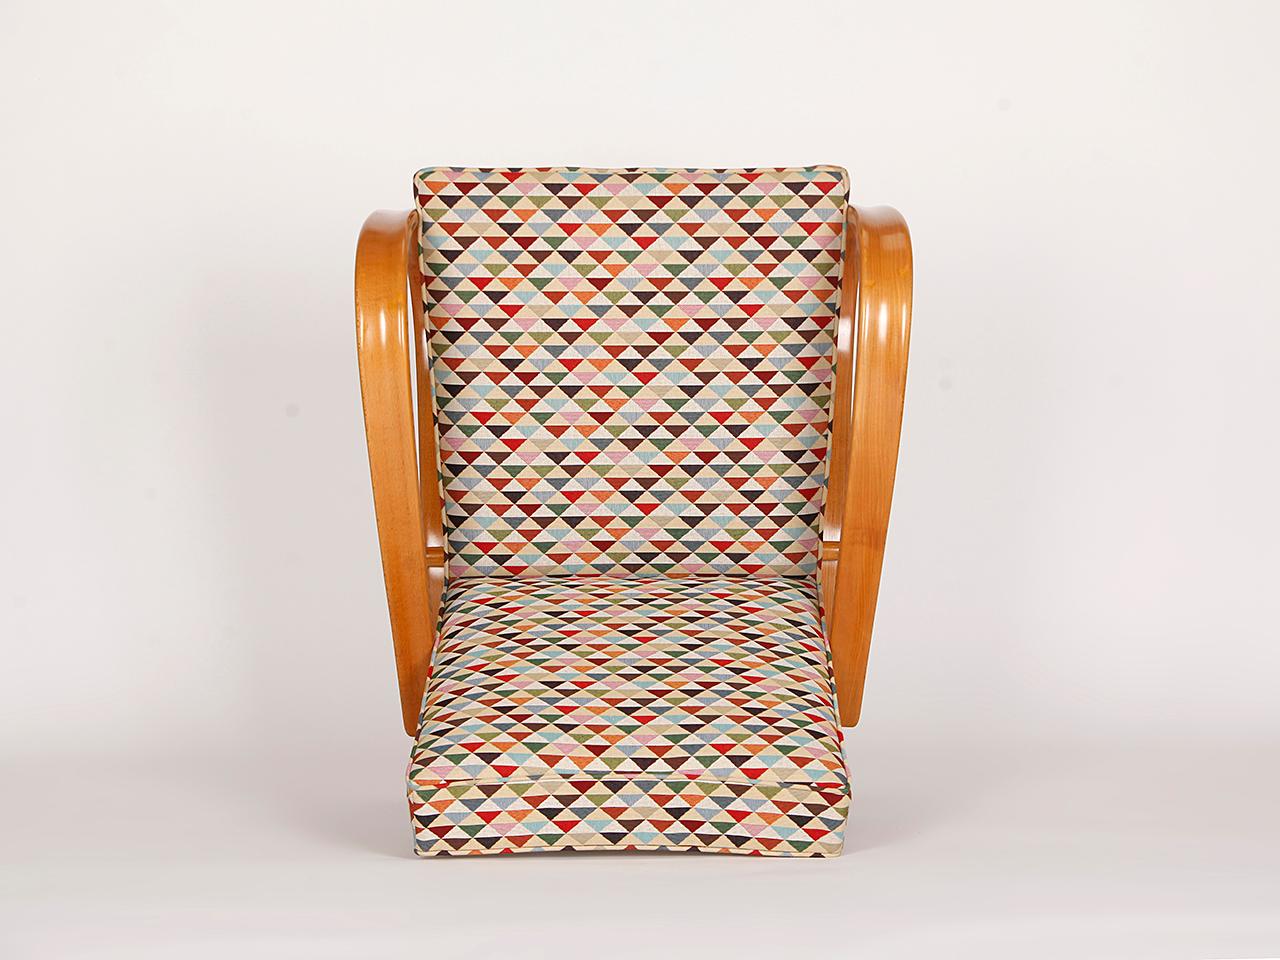 20th Century Streamline Chair H-269 by Jindrich Halabala for Spojene UP Zavody, 1930s